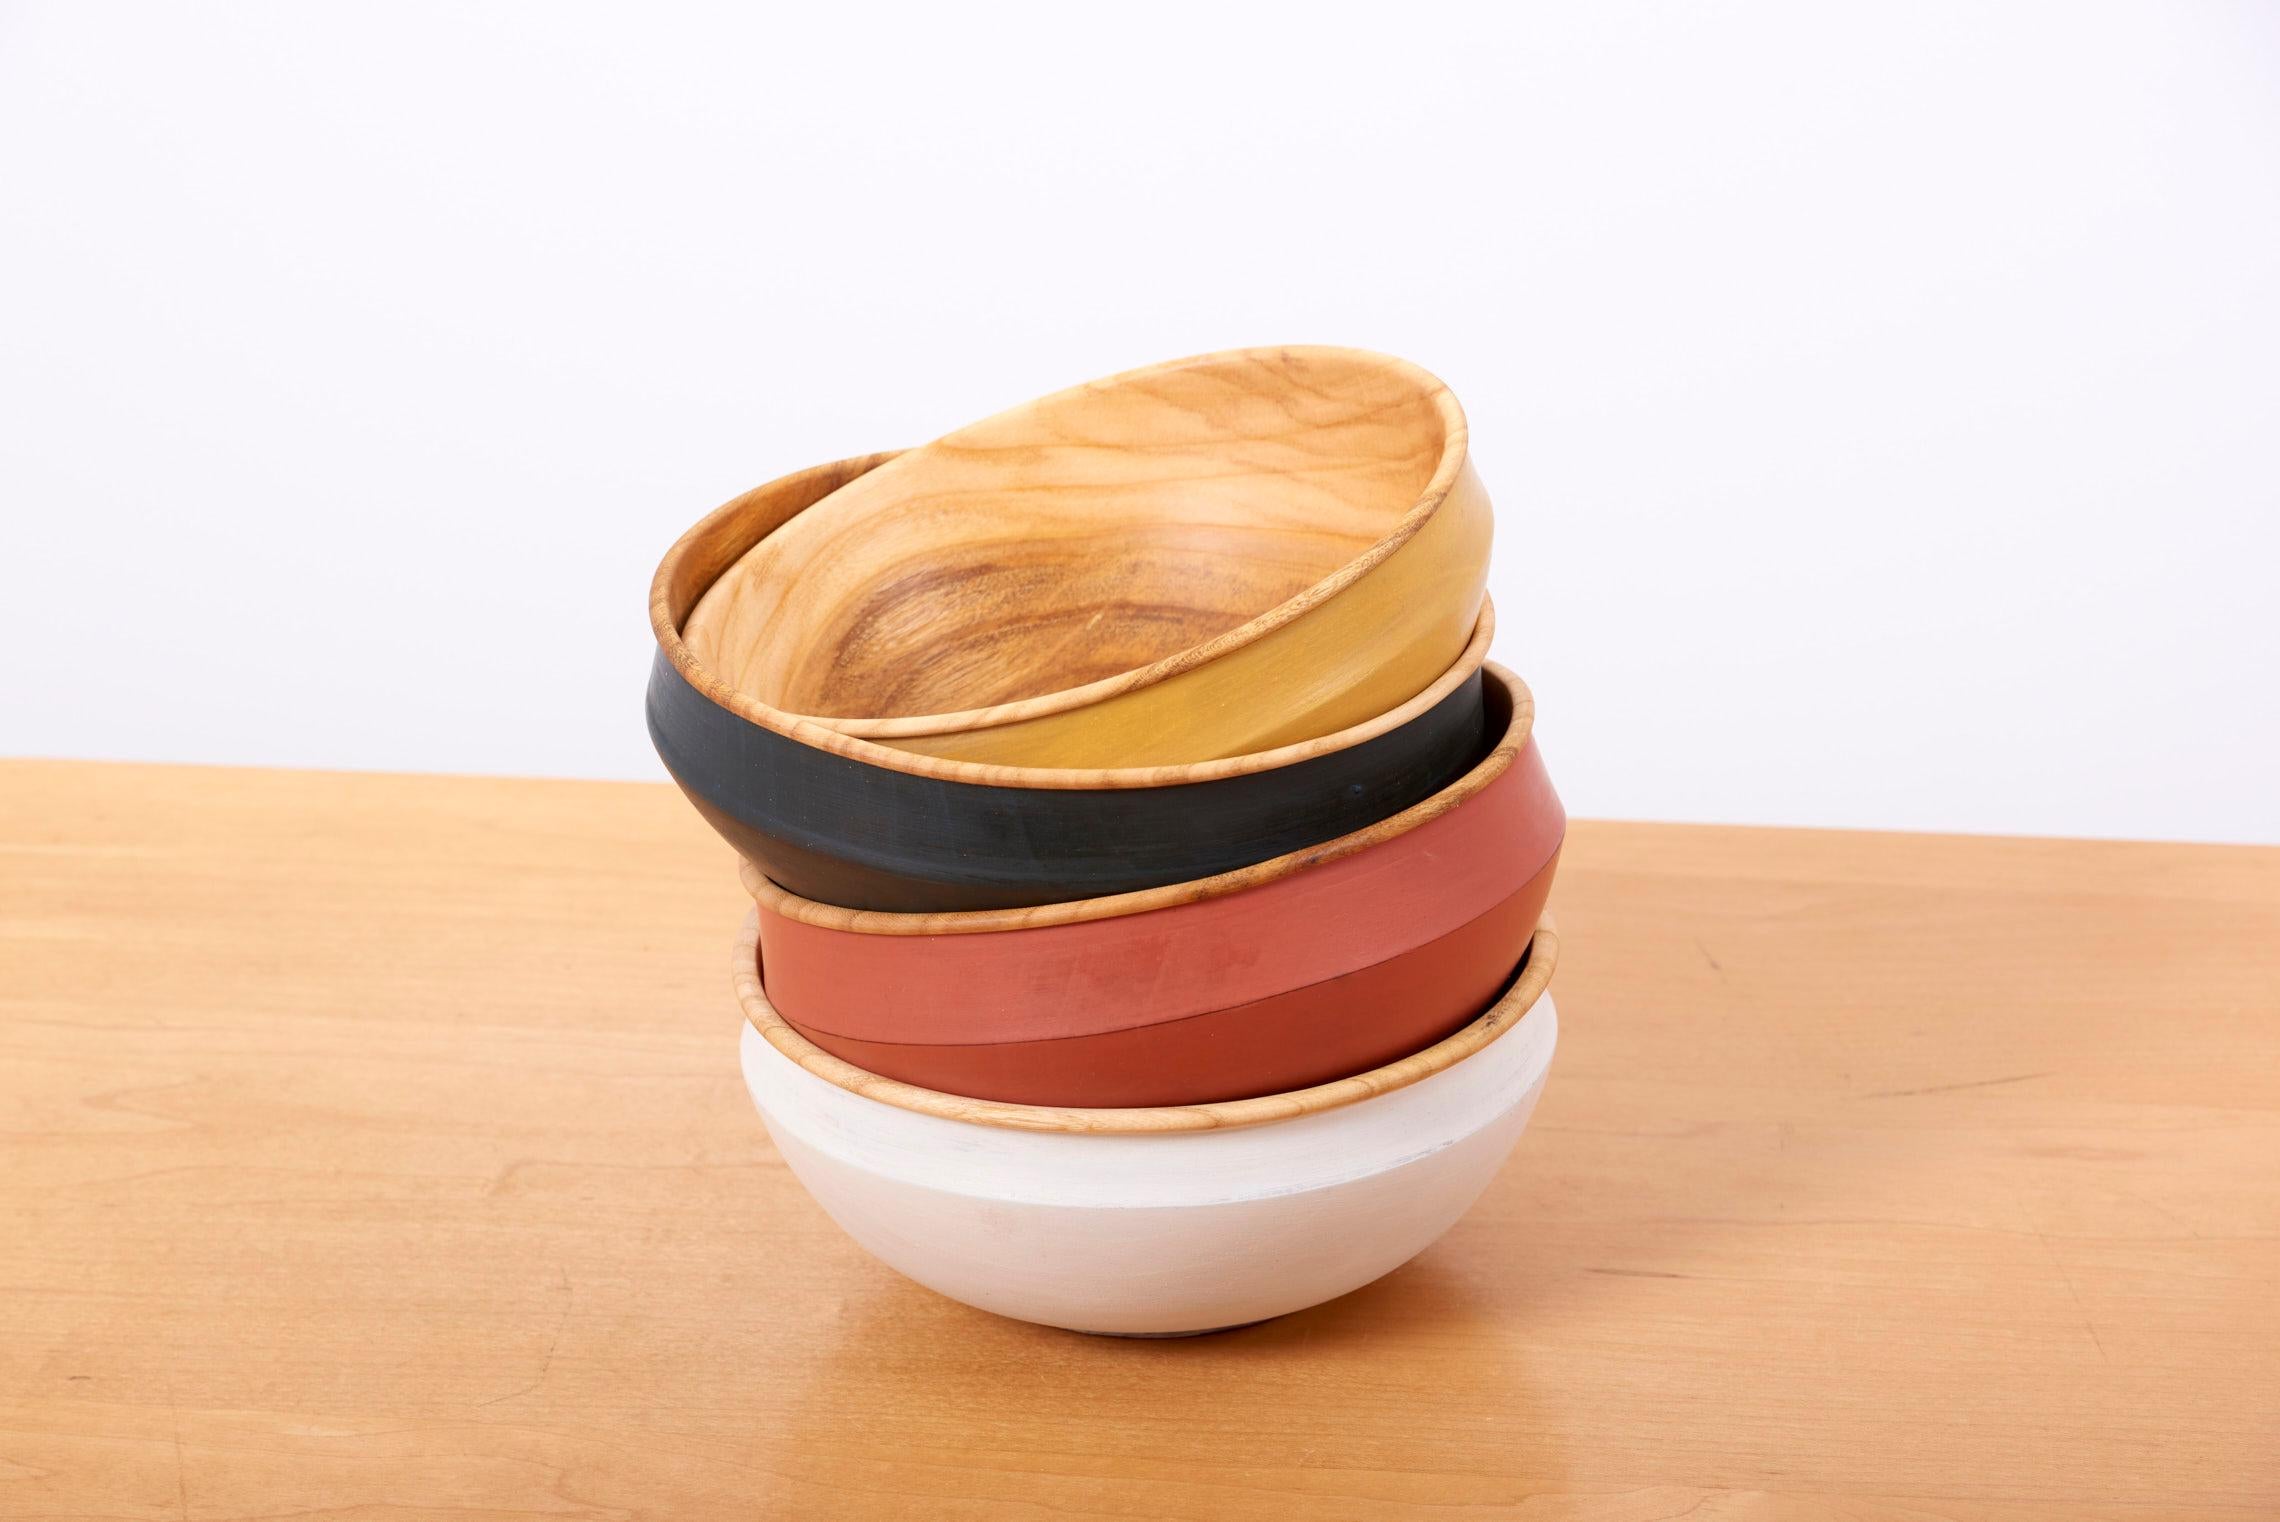 Ensemble de 4 bols en bois de couleurs différentes fabriqués à la main par Fabian Fischer, Allemagne, 2020. Fabriqué en bois de hêtre avec peinture au lait à l'extérieur.